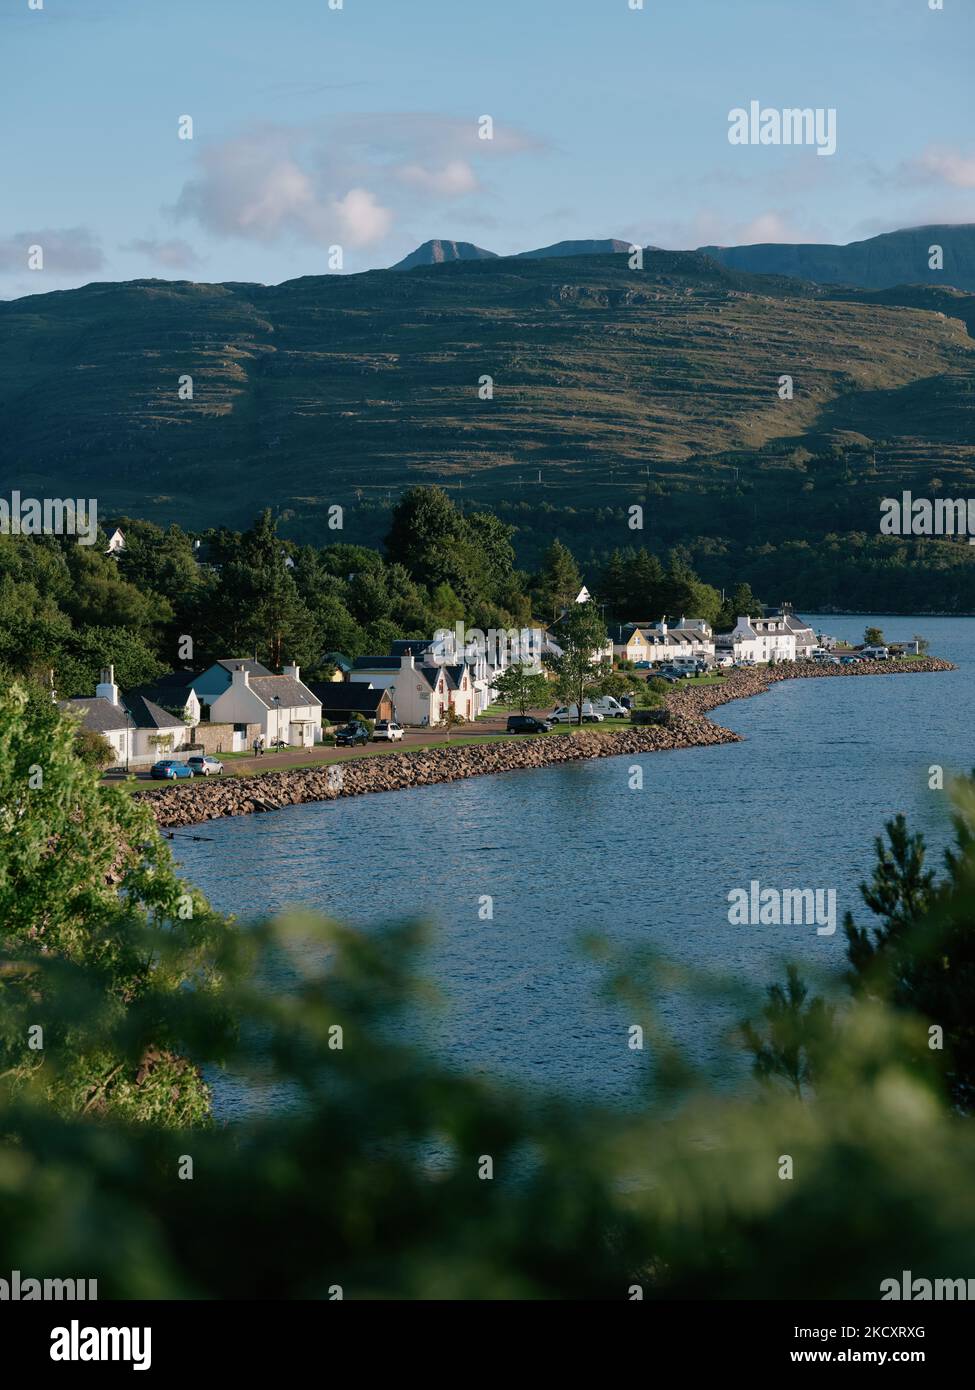 Le loch d'été et le paysage de montagne du Loch Shielddaig et le village de Wester Ross, Highland, Ecosse Royaume-Uni Banque D'Images